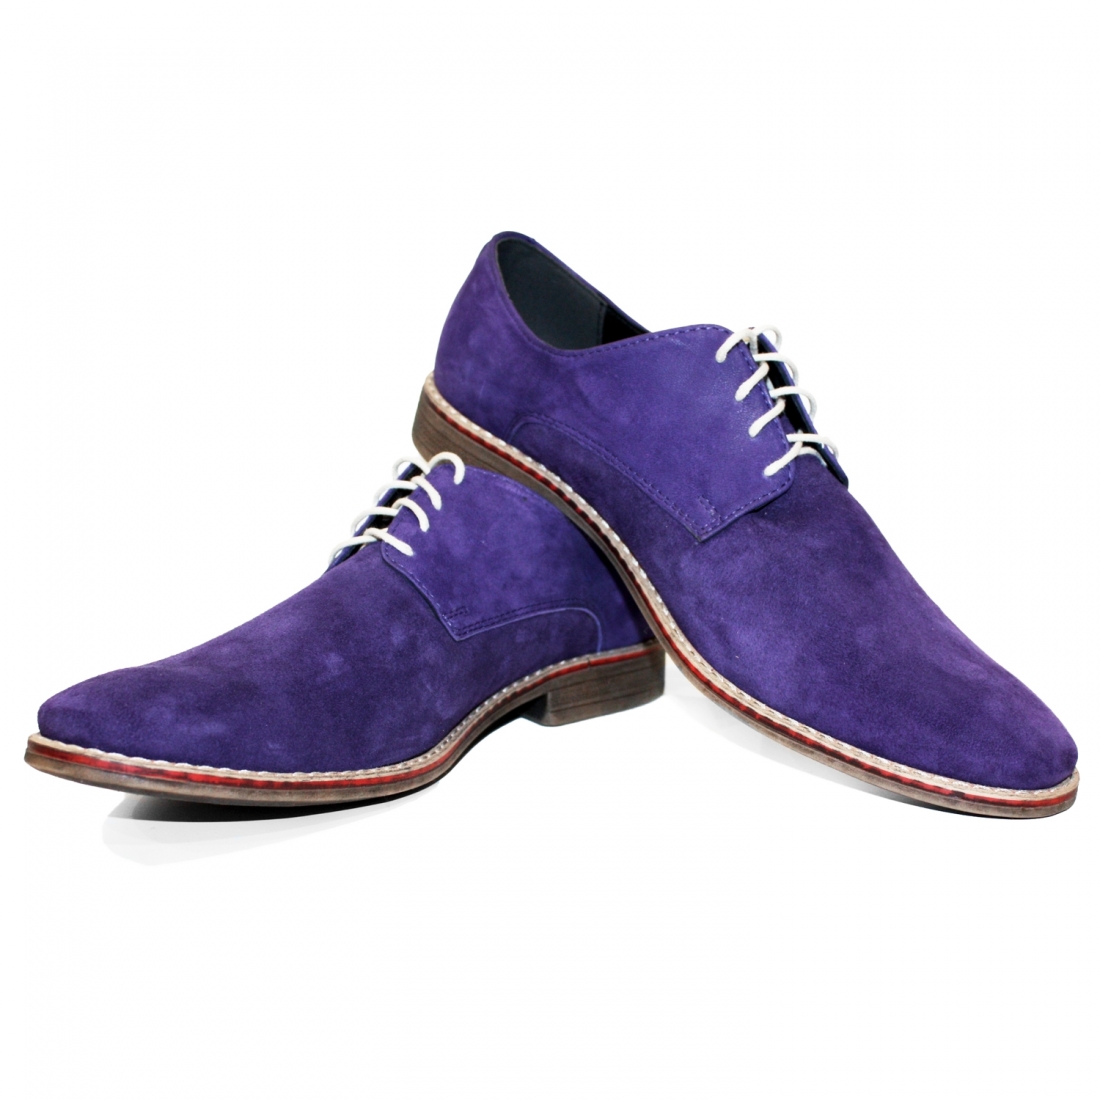 Modello Viollati - Scarpe Classiche - Handmade Colorful Italian Leather Shoes